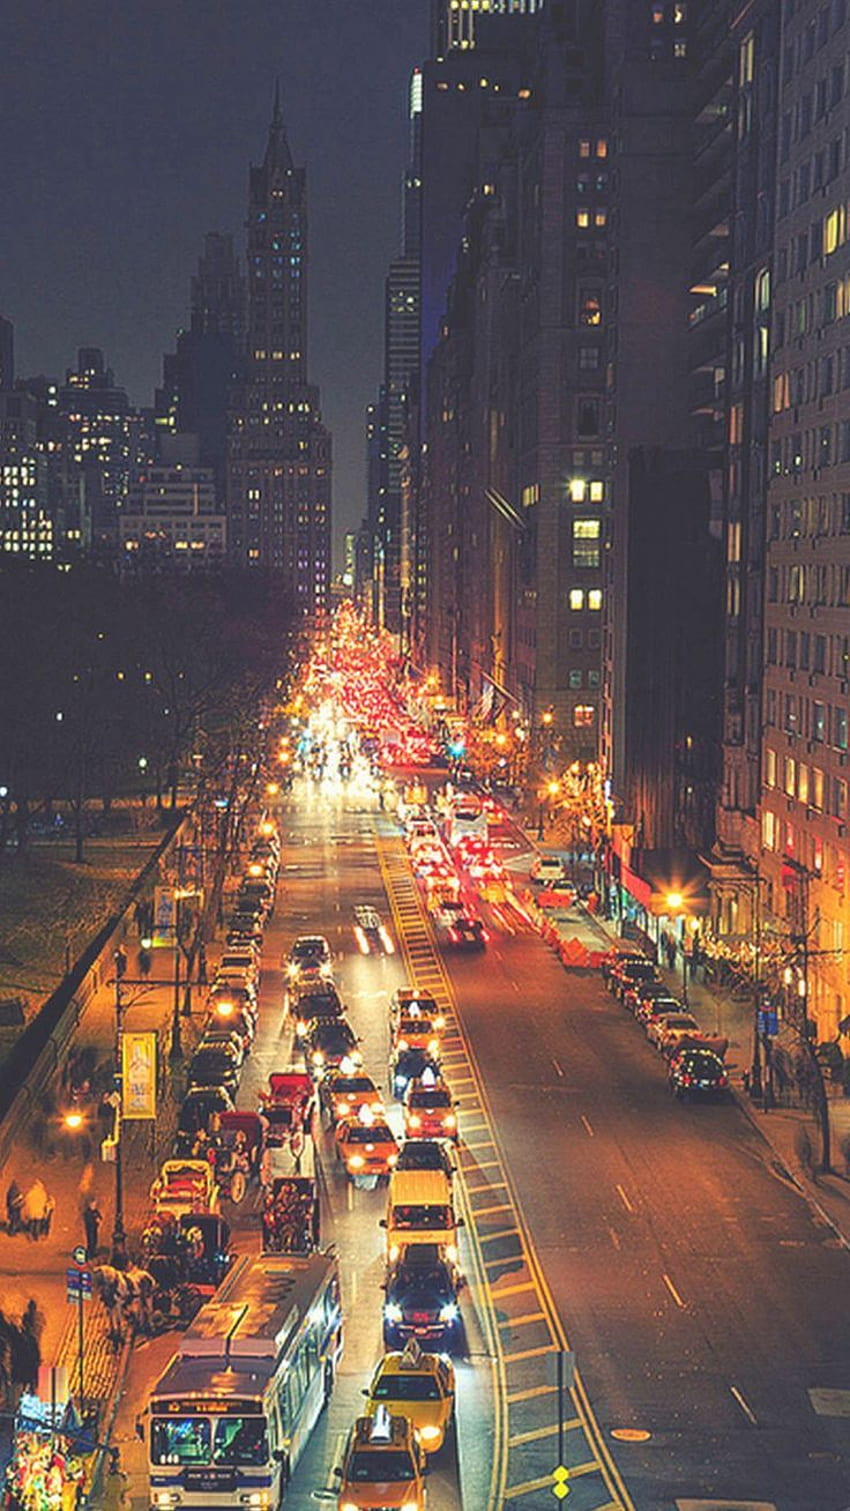 Zajęty Nowy Jork Nocny ruch uliczny IPhone 6 . IPhone, iPad w jednym miejscu. Nocne życie, miasto, piękne miejsca, scena uliczna Tapeta na telefon HD